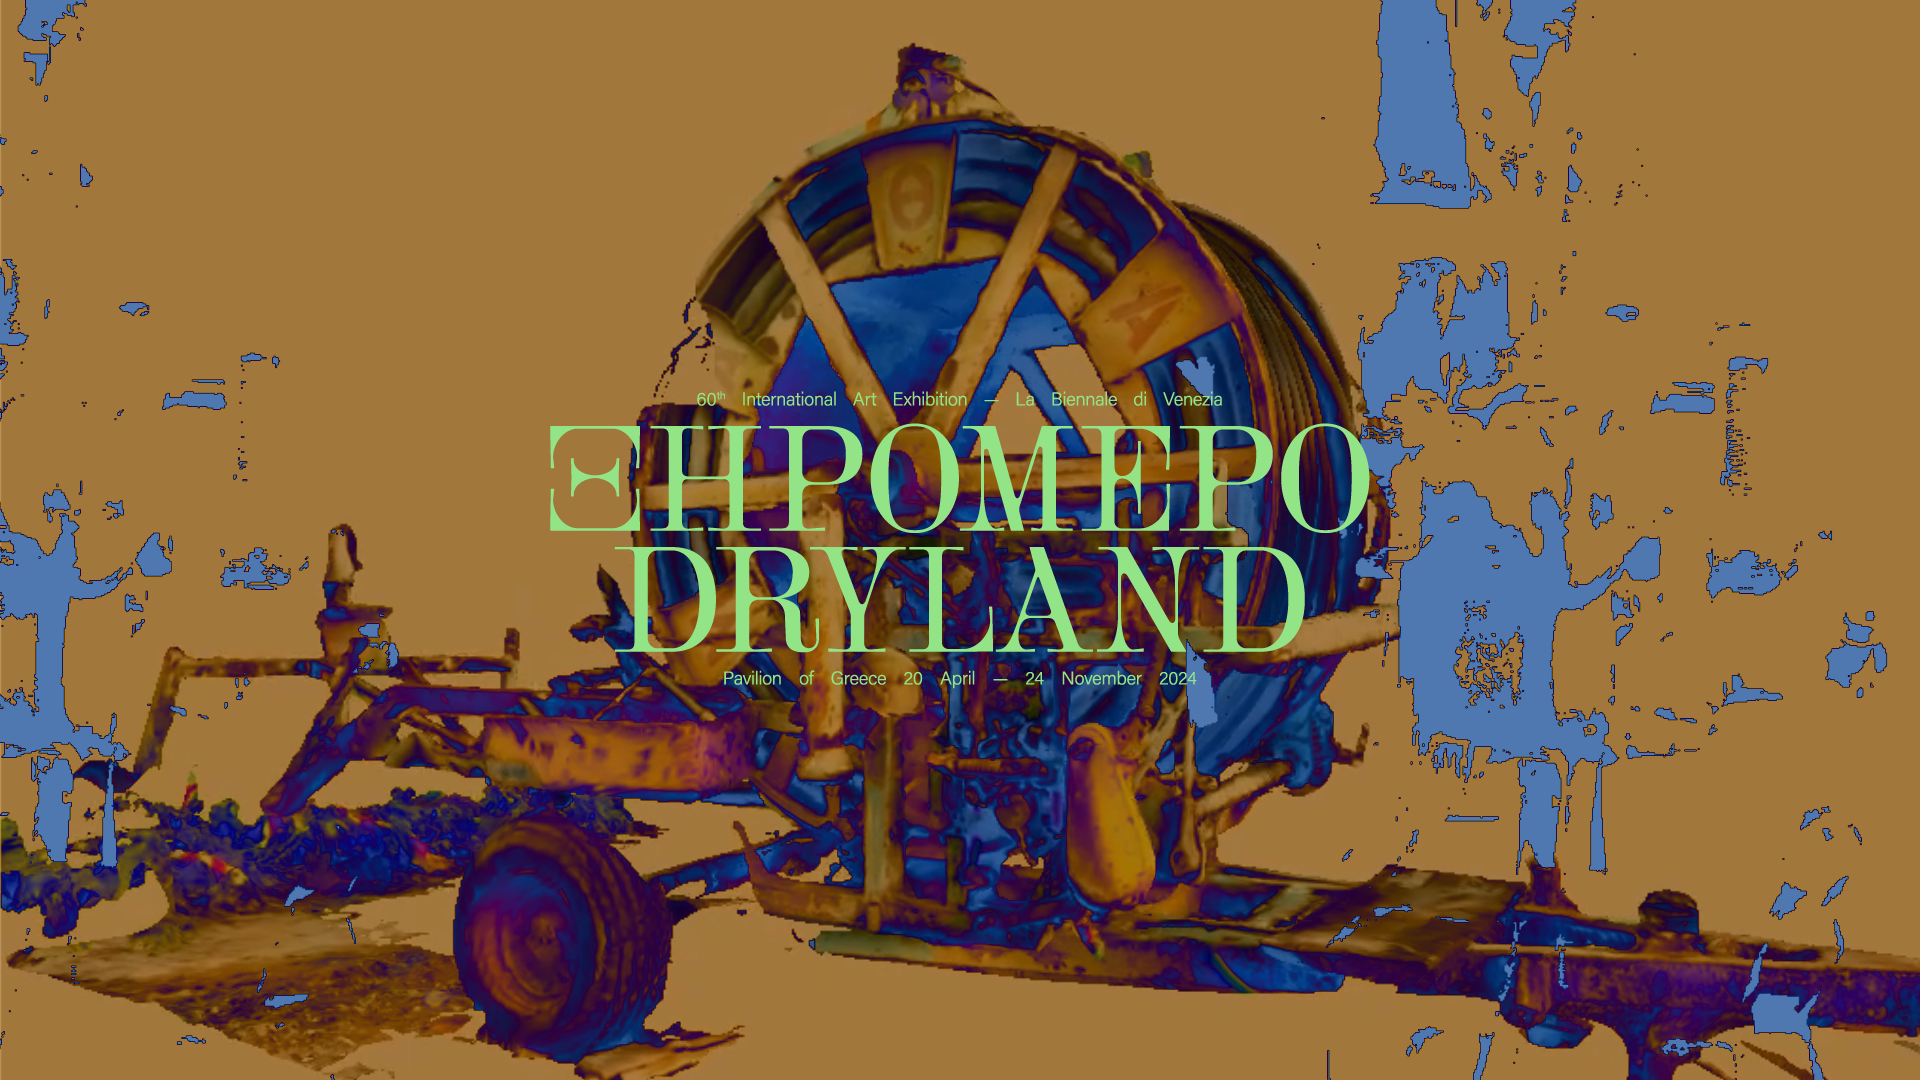 Το Ξηρόμερο/Dryland θα εκπροσωπήσει την Ελλάδα στην 60η Διεθνή Έκθεση Τέχνης - La Biennale di Venezia